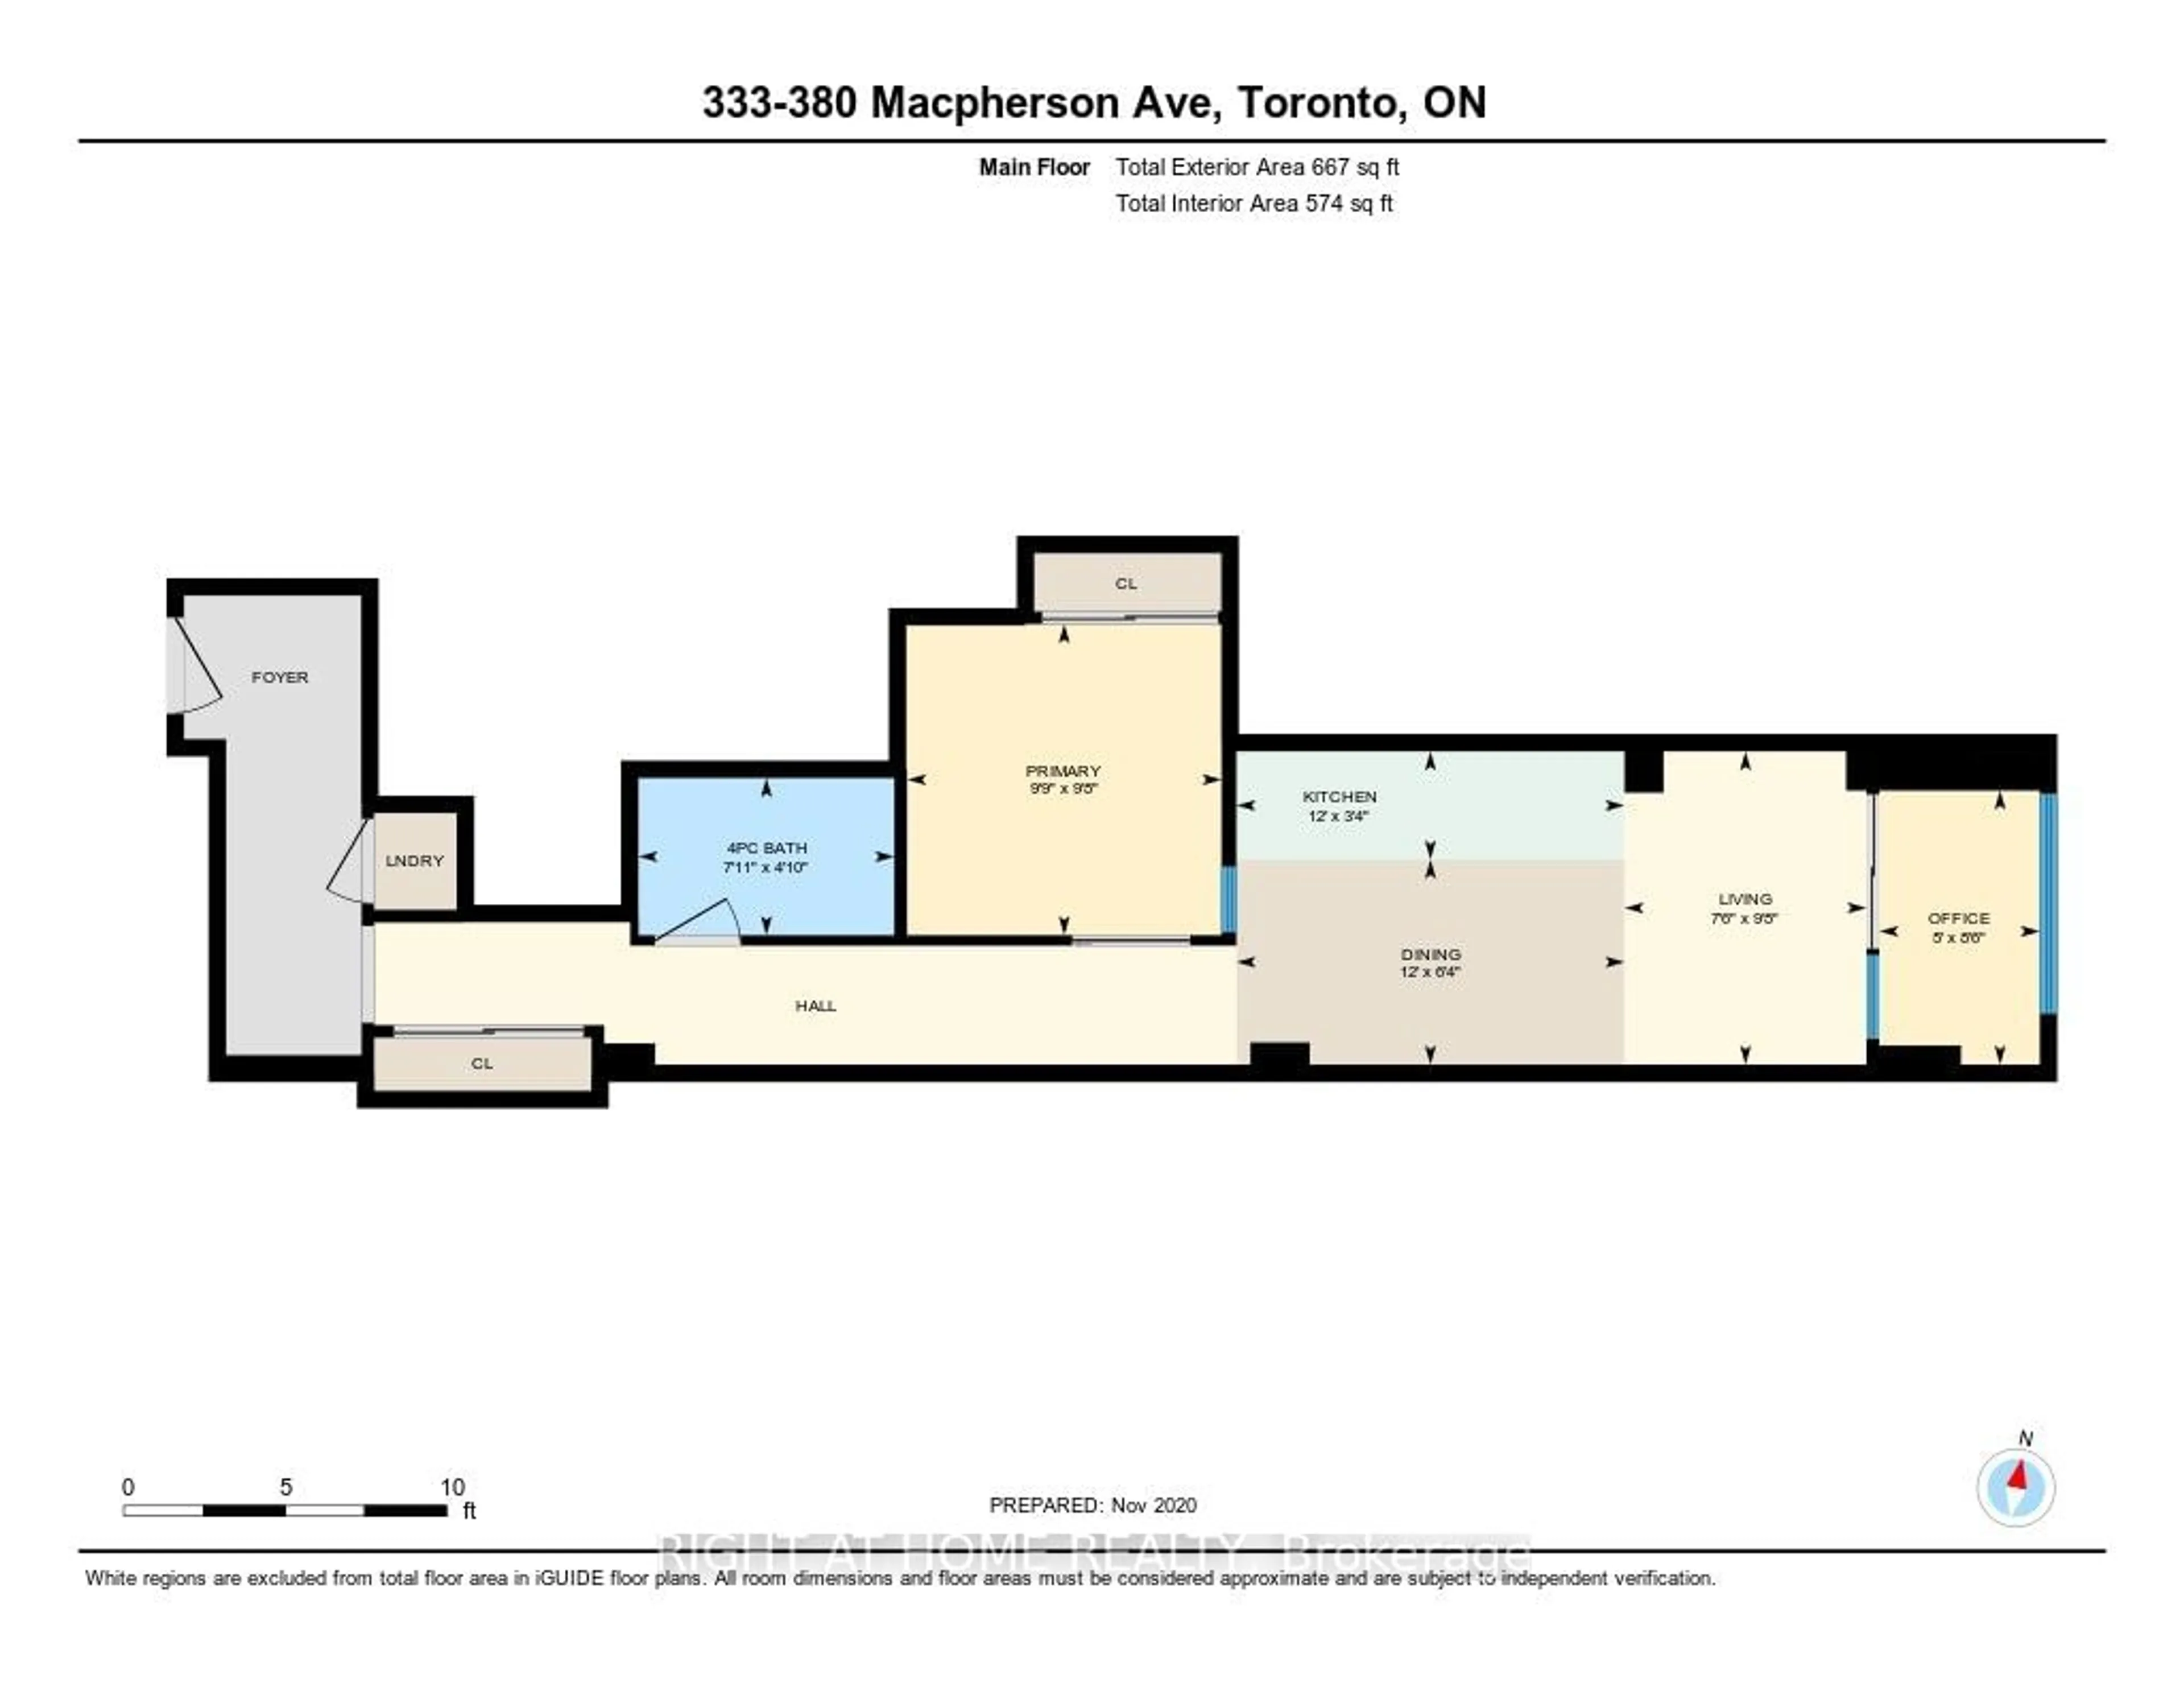 Floor plan for 380 Macpherson Ave #333, Toronto Ontario M4V 3E3